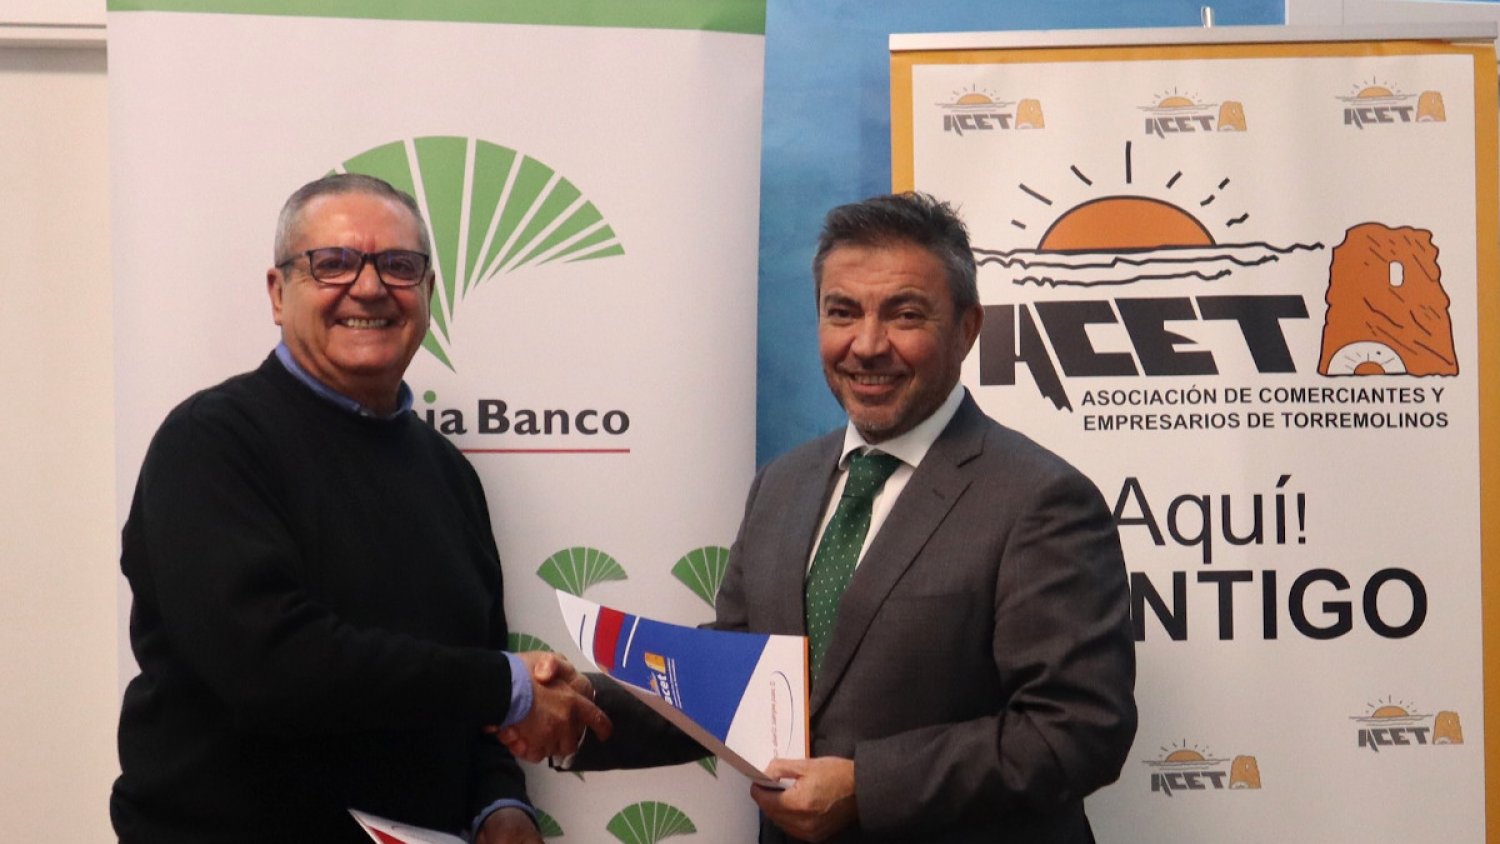 Unicaja Banco renueva su apoyo a ACET para impulsar la competitividad del comercio local de Torremolinos